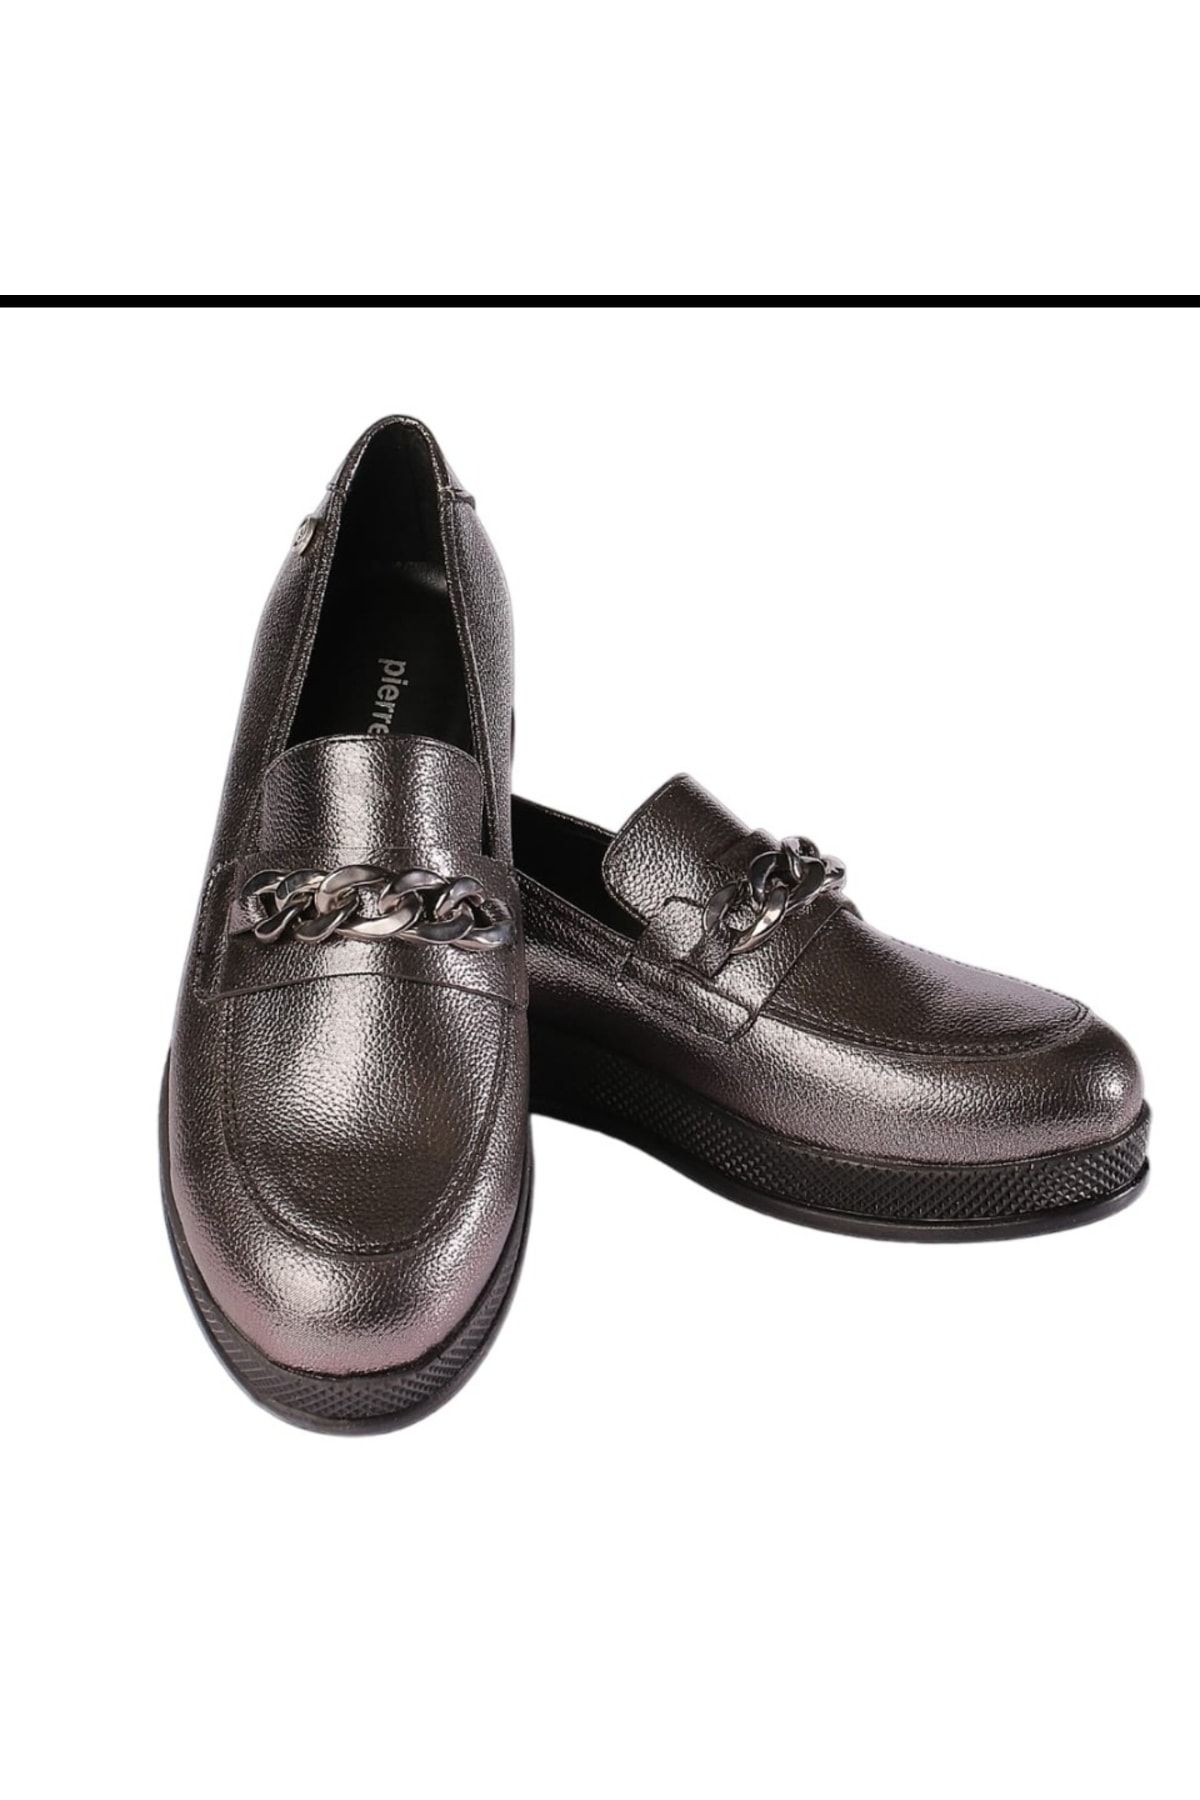 Pierre Cardin Klasik Günlük Ayakkabı